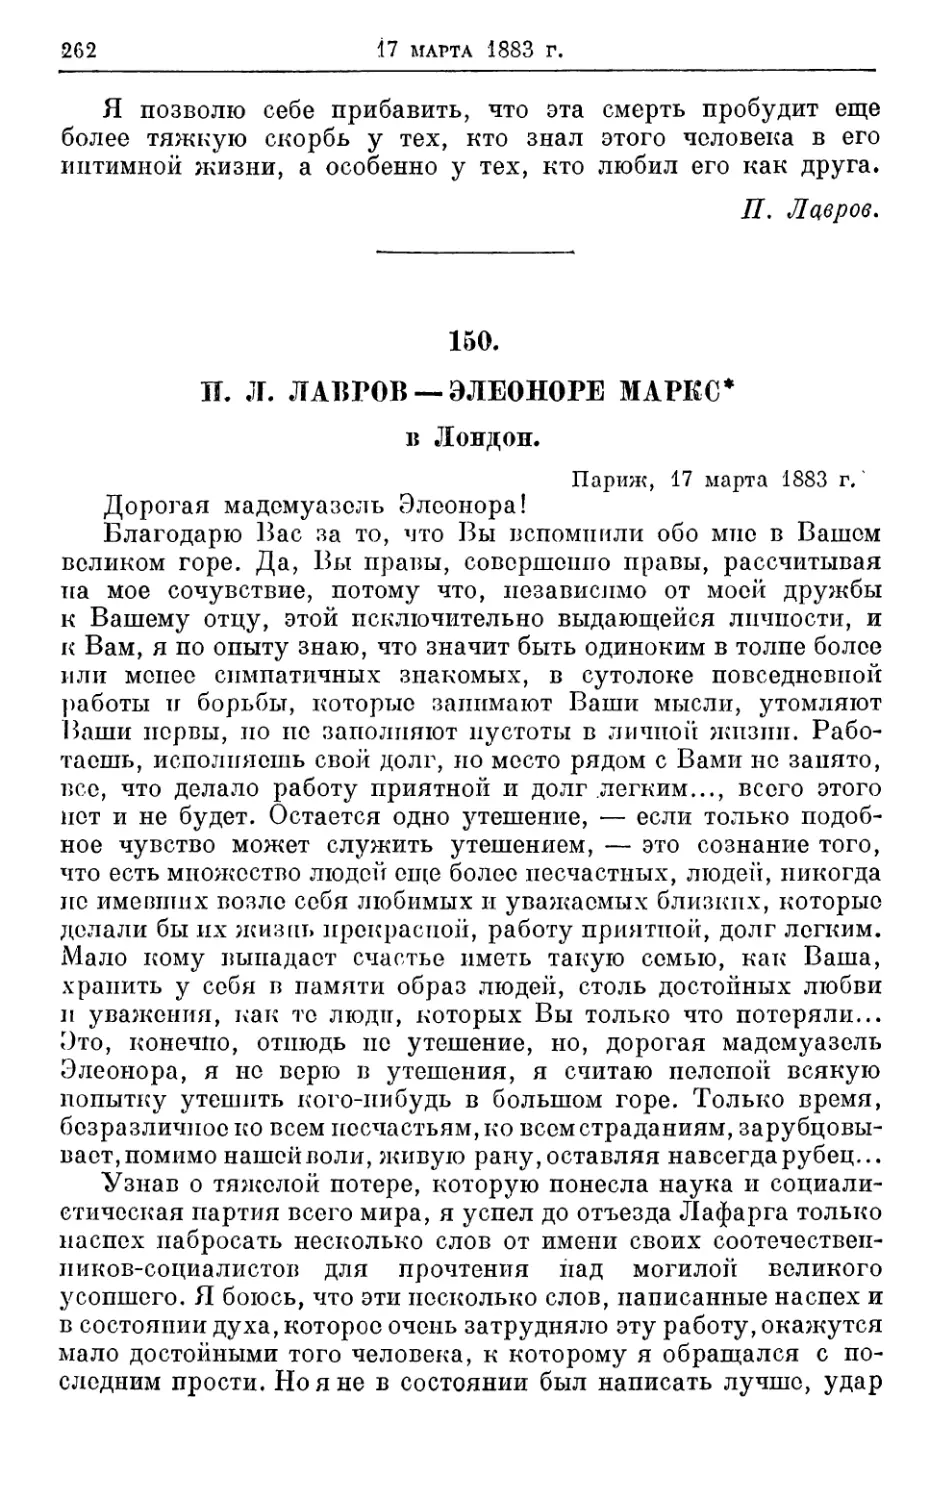 150. Лавров — Элеоноре Маркс *, 17 марта 1883г